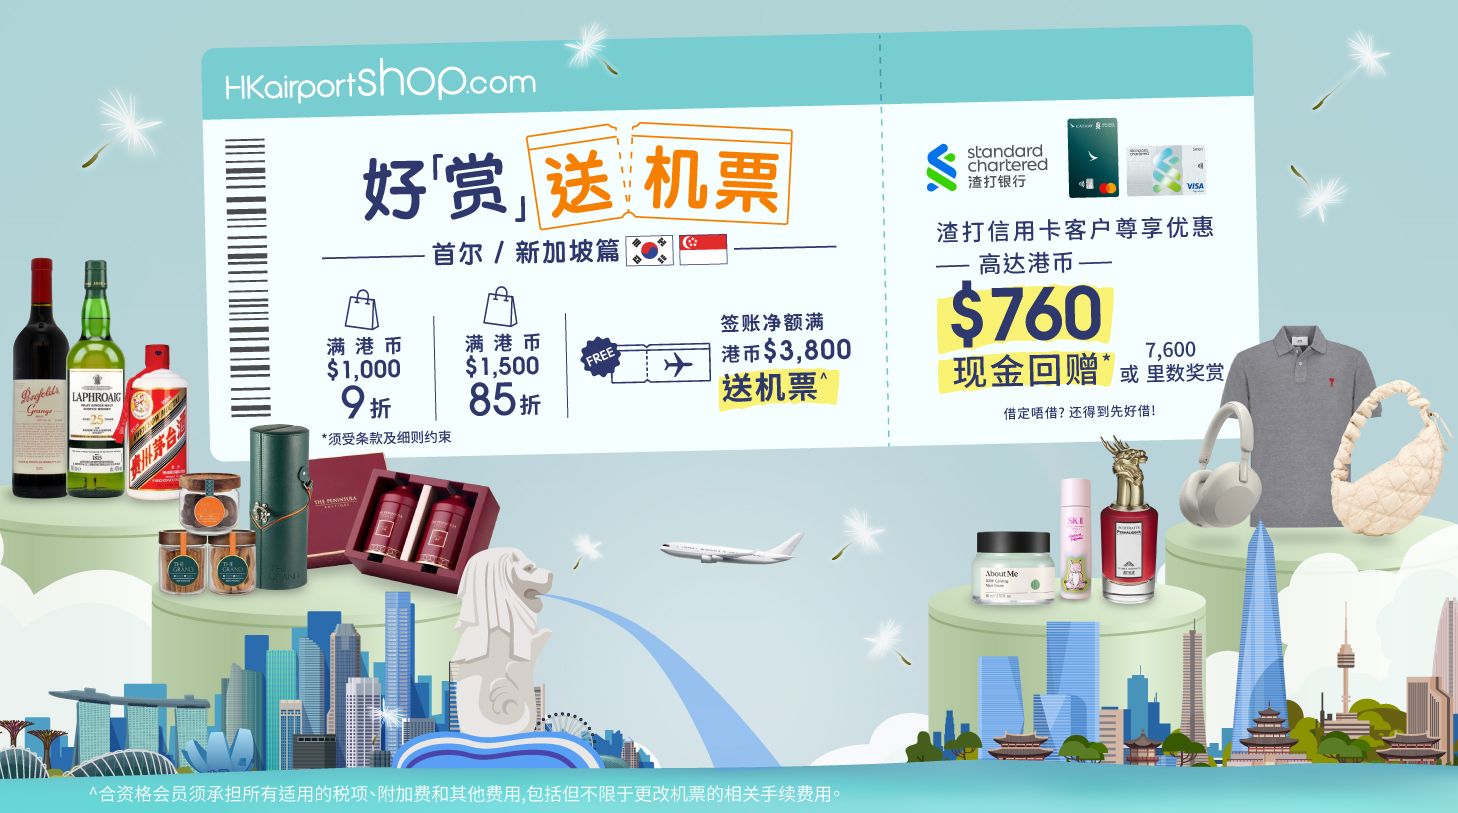 香港國際機場HKairportShop.com網上商店呈獻春日好「賞」送機票活動